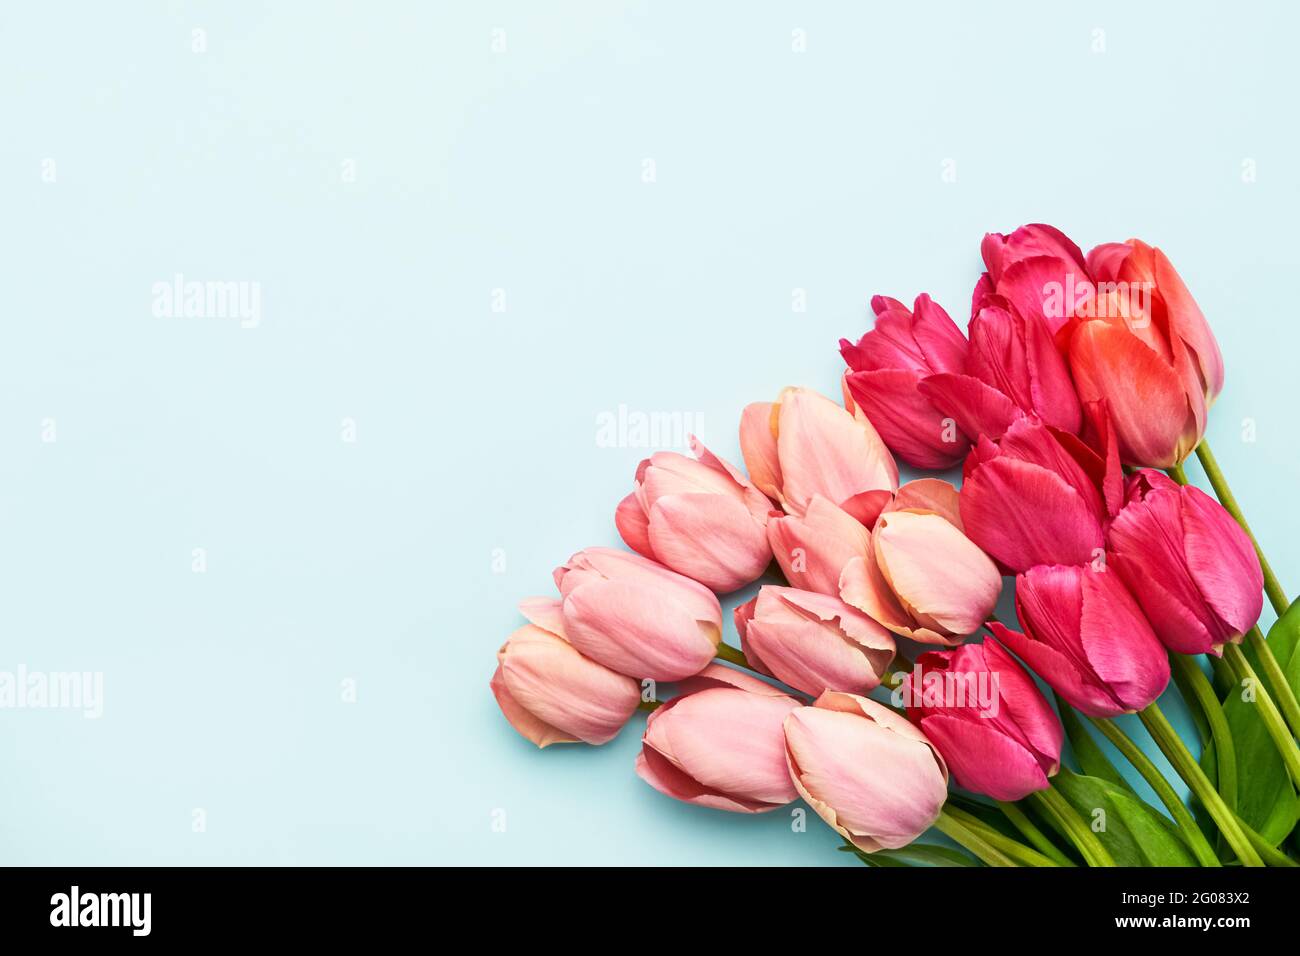 Farbenfrohe rosa Tulpenblüten auf hellblauem Hintergrund, selektiver Fokus. Muttertag, Geburtstagsfeier Konzept. Flach liegend, Platz für Text kopieren Stockfoto